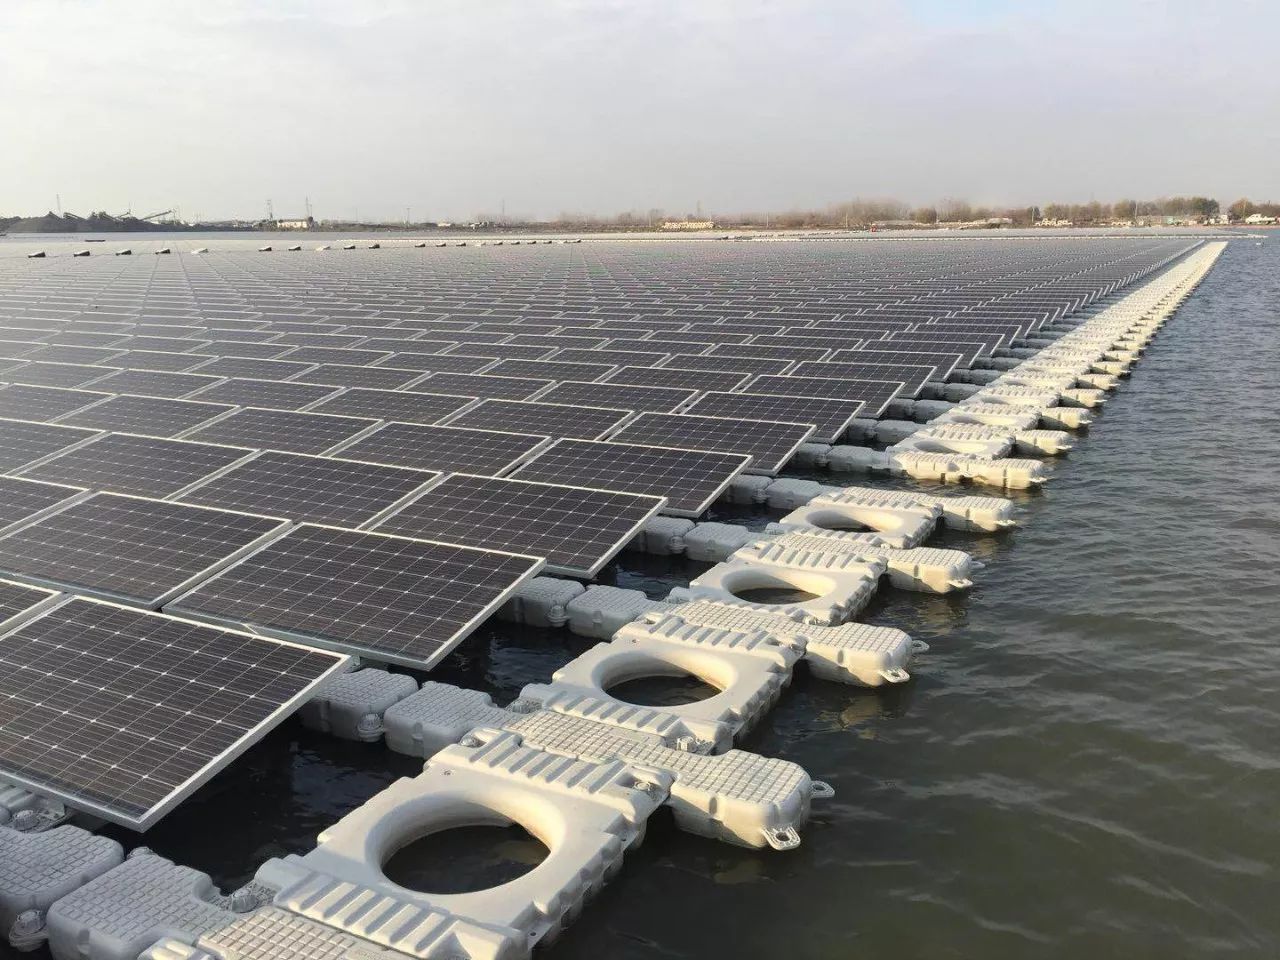 Skim pembinaan projek fotovoltaik terapung di atas air